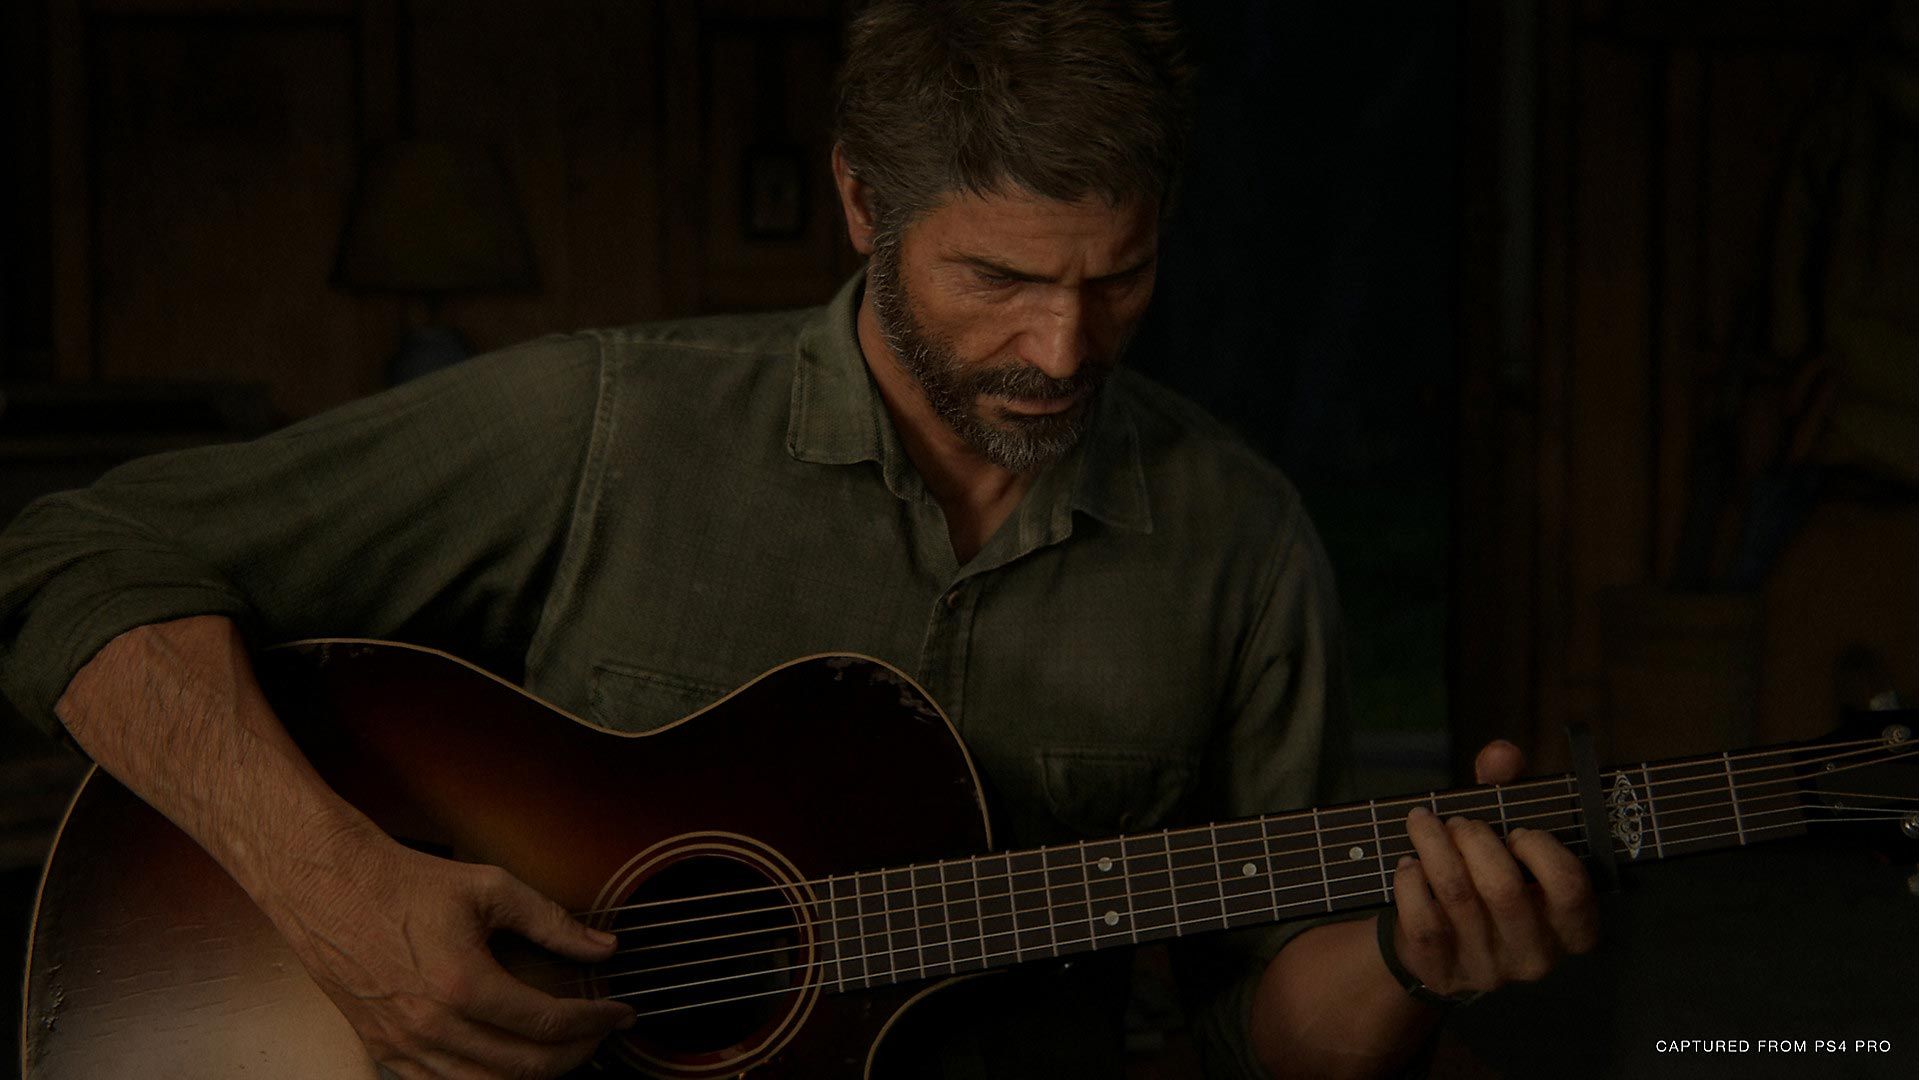 سونی لایک و نظرات تریلر جدید بازی The Last of Us Part II را غیرفعال کرده است